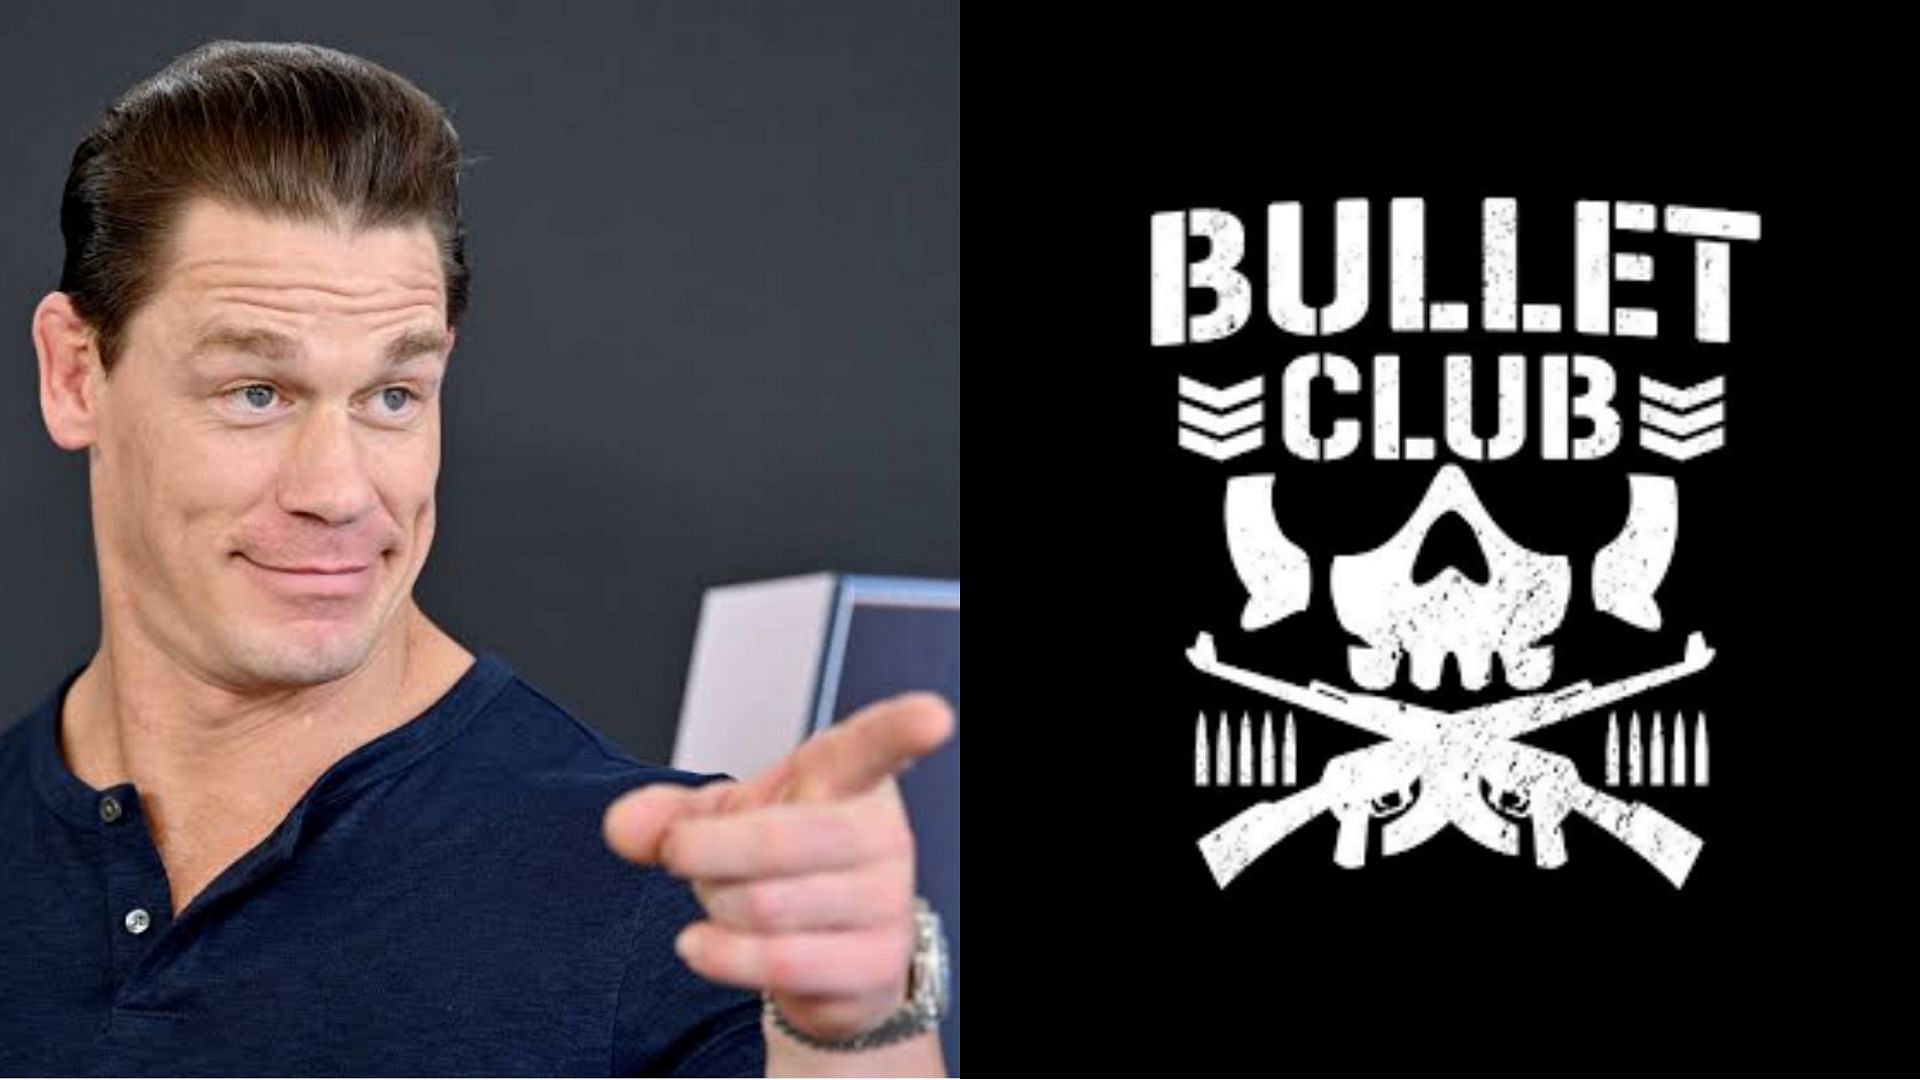 Former Bullet Club Member Stephen Amell dissed John Cena.